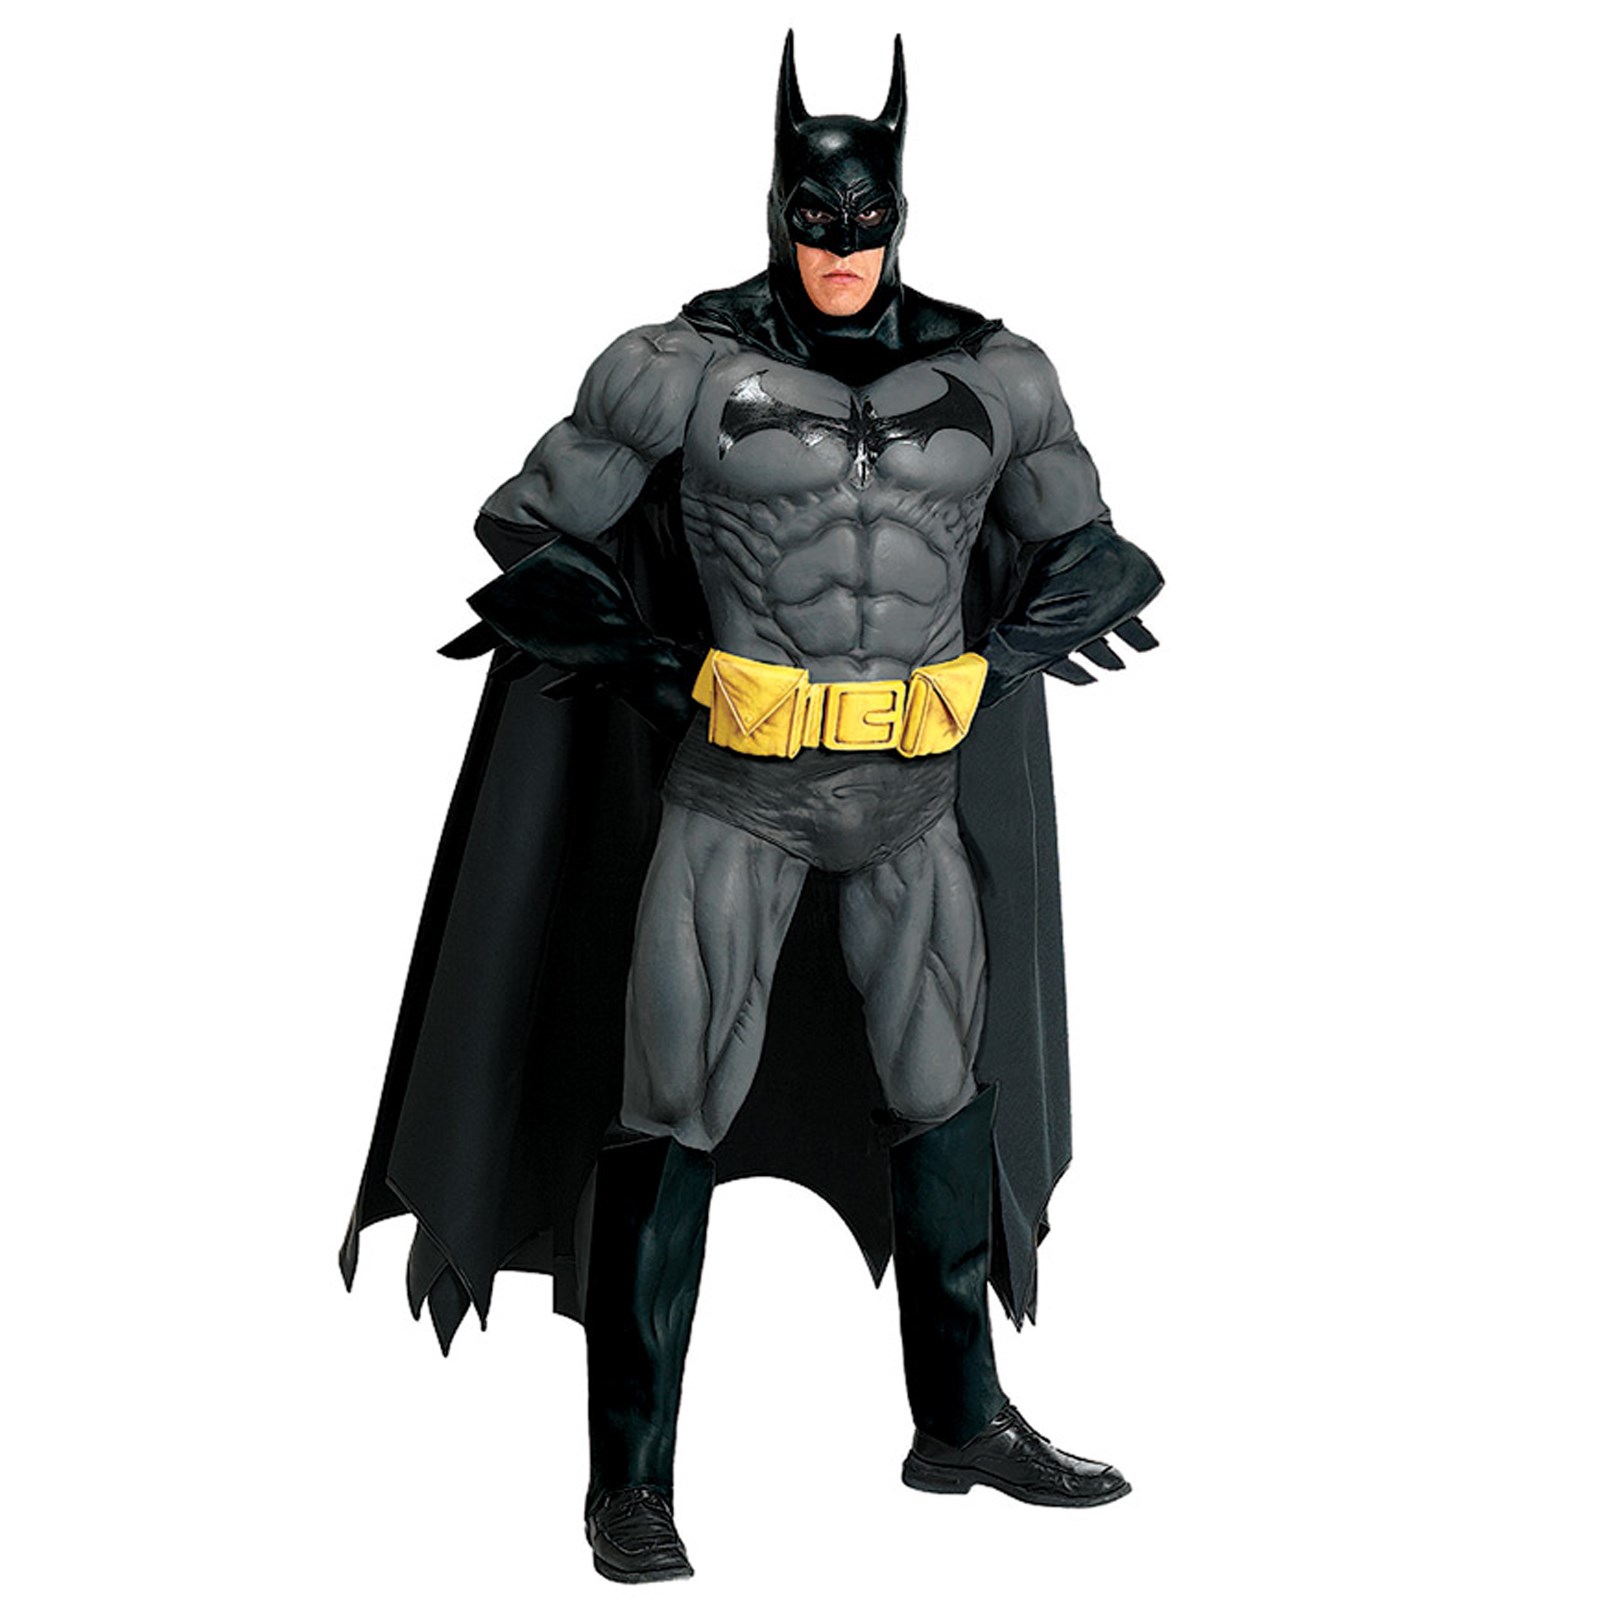 Collectors Edition Batman Adult Costume